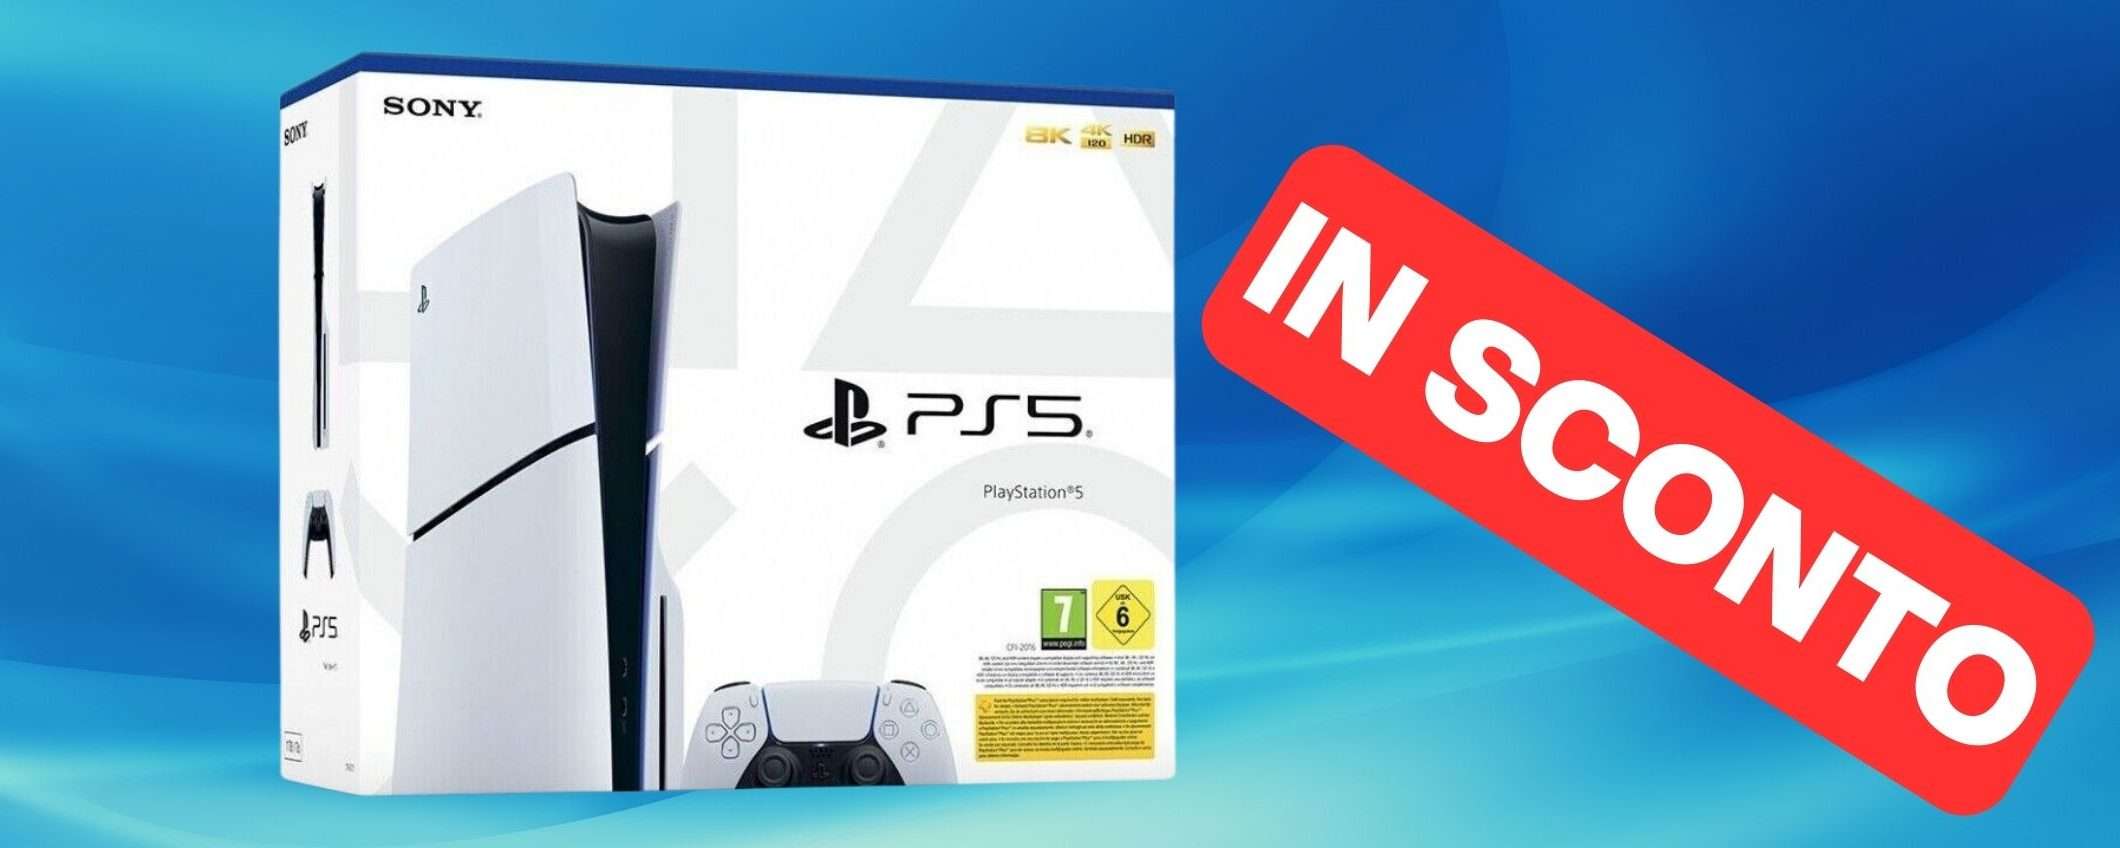 PS5 Slim è disponibile su eBay con un ottimo sconto